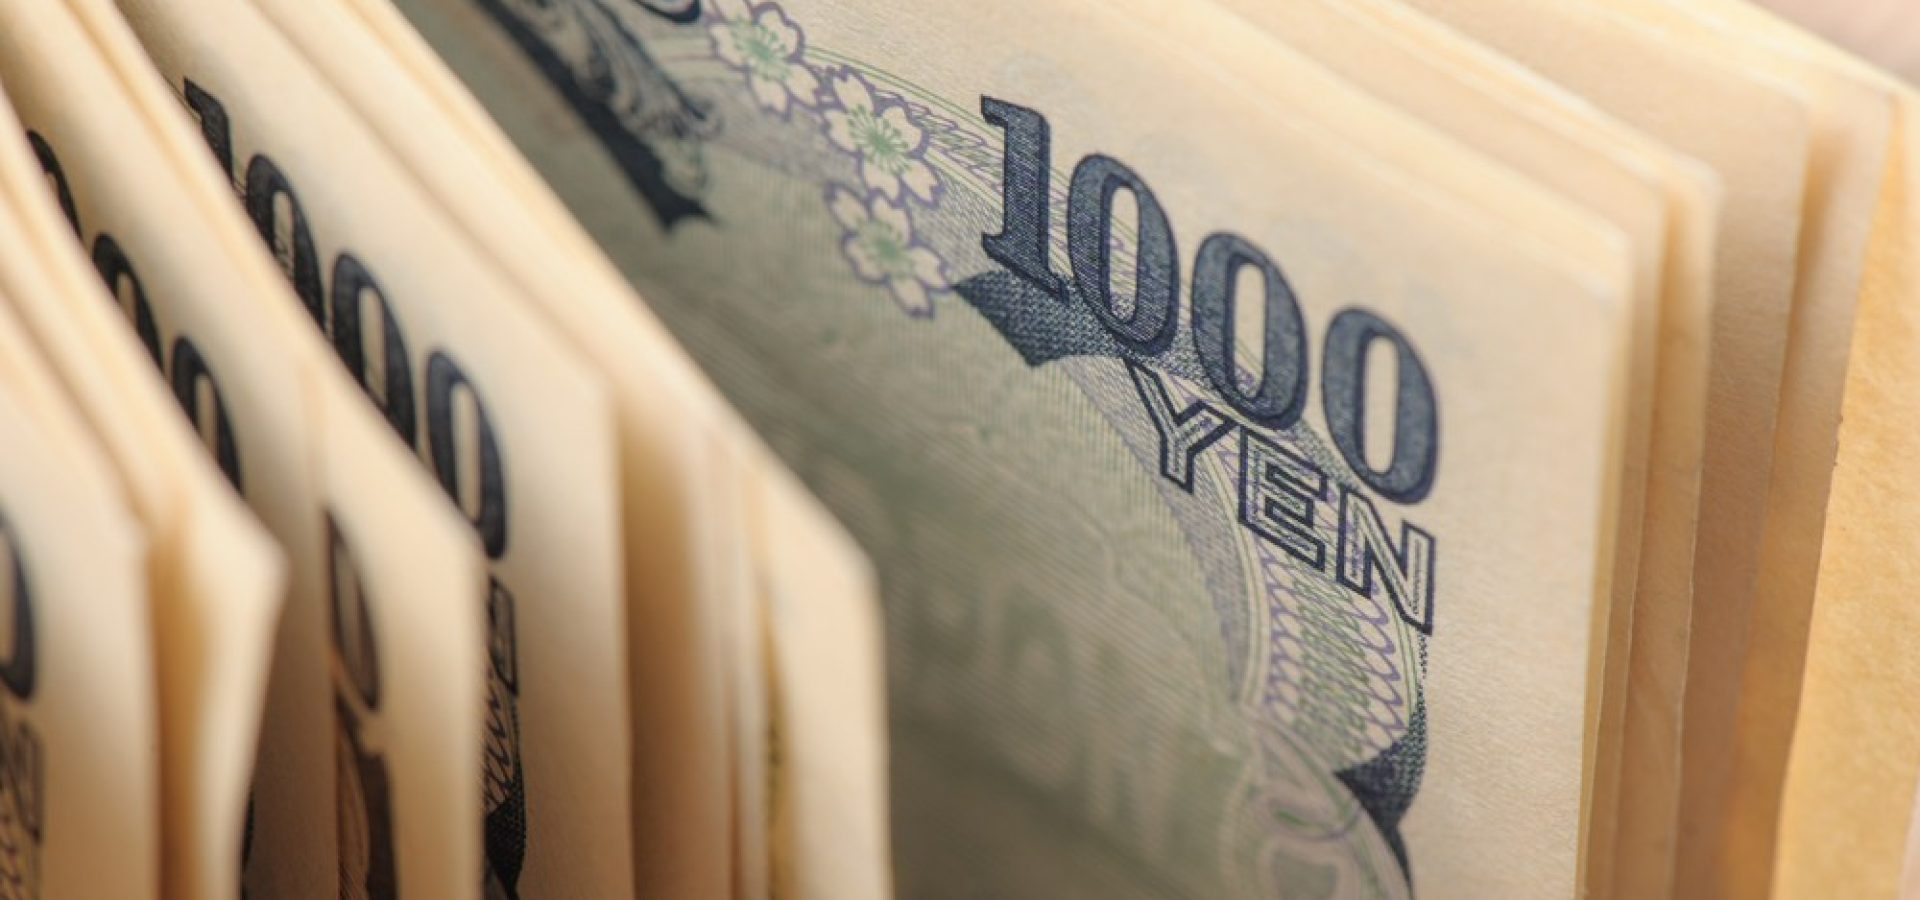 Wibest – Yen exchange rate: Japanese yen bills.